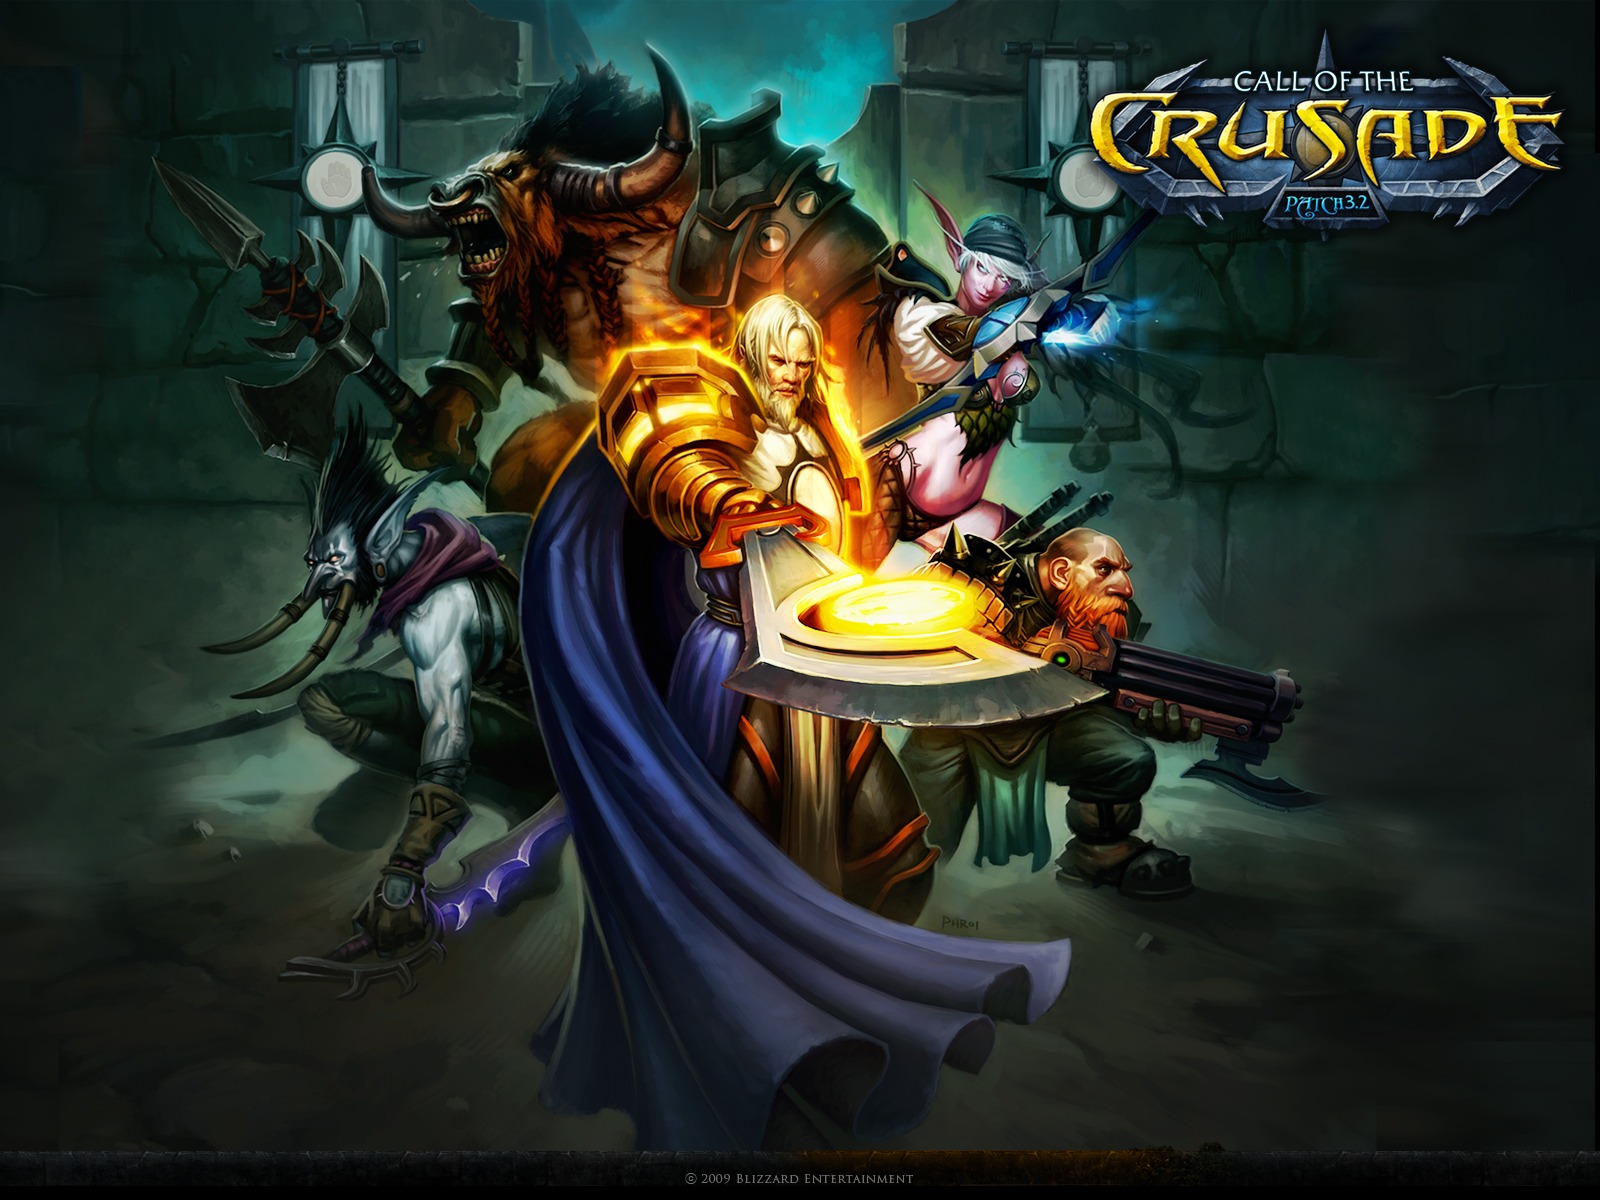 World Of Warcraft Achtergronden Wallpaper Wow